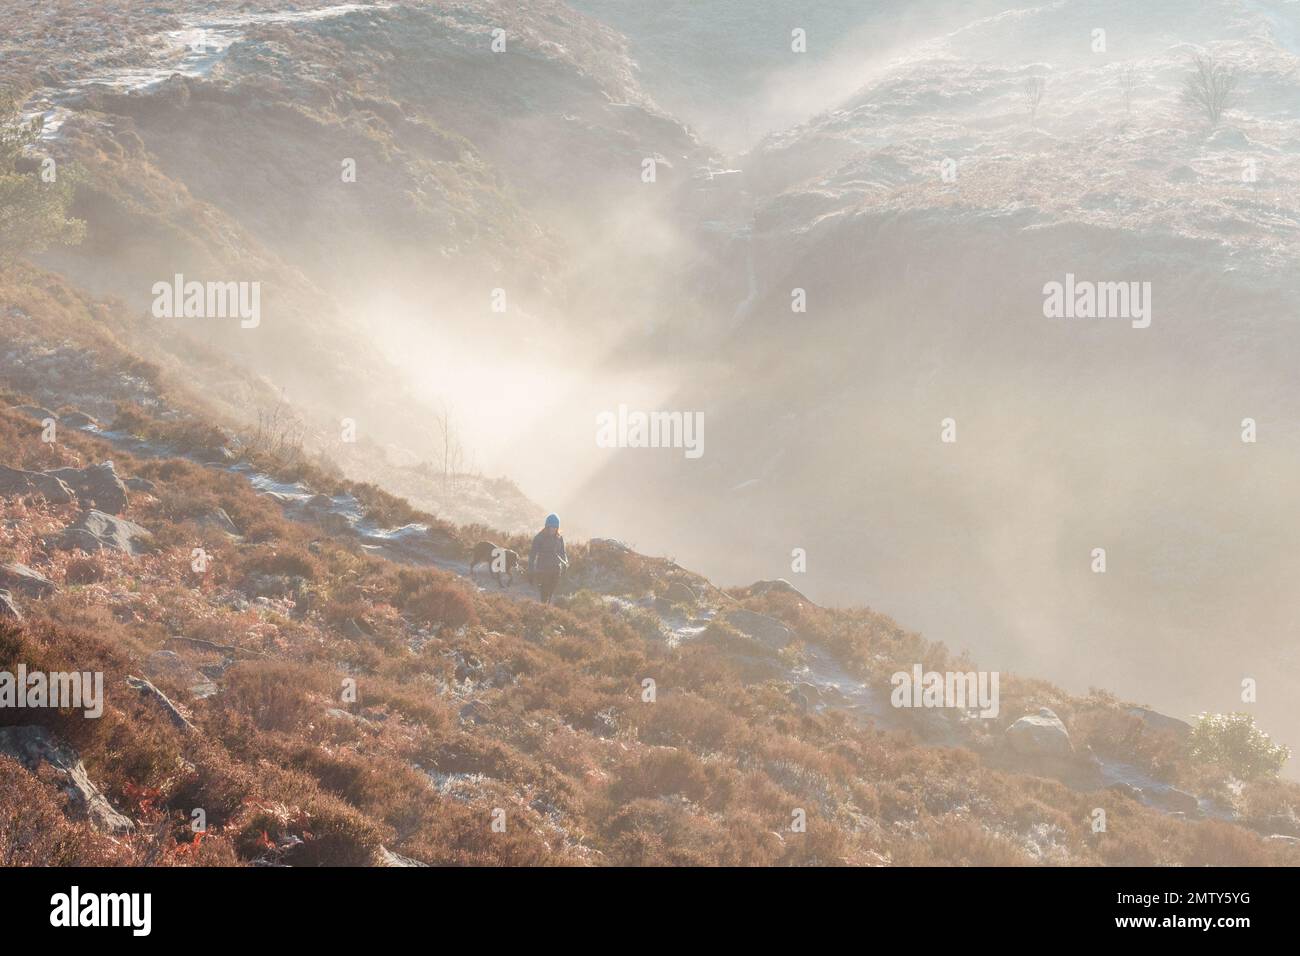 Eine Frau, die an einem kalten Wintertag mit einem Hund auf dem Ilkley Moor spaziert, mit einem stimmungsvollen Nebel, der im Hintergrund eine Atmosphäre erzeugt und schwer ist Stockfoto